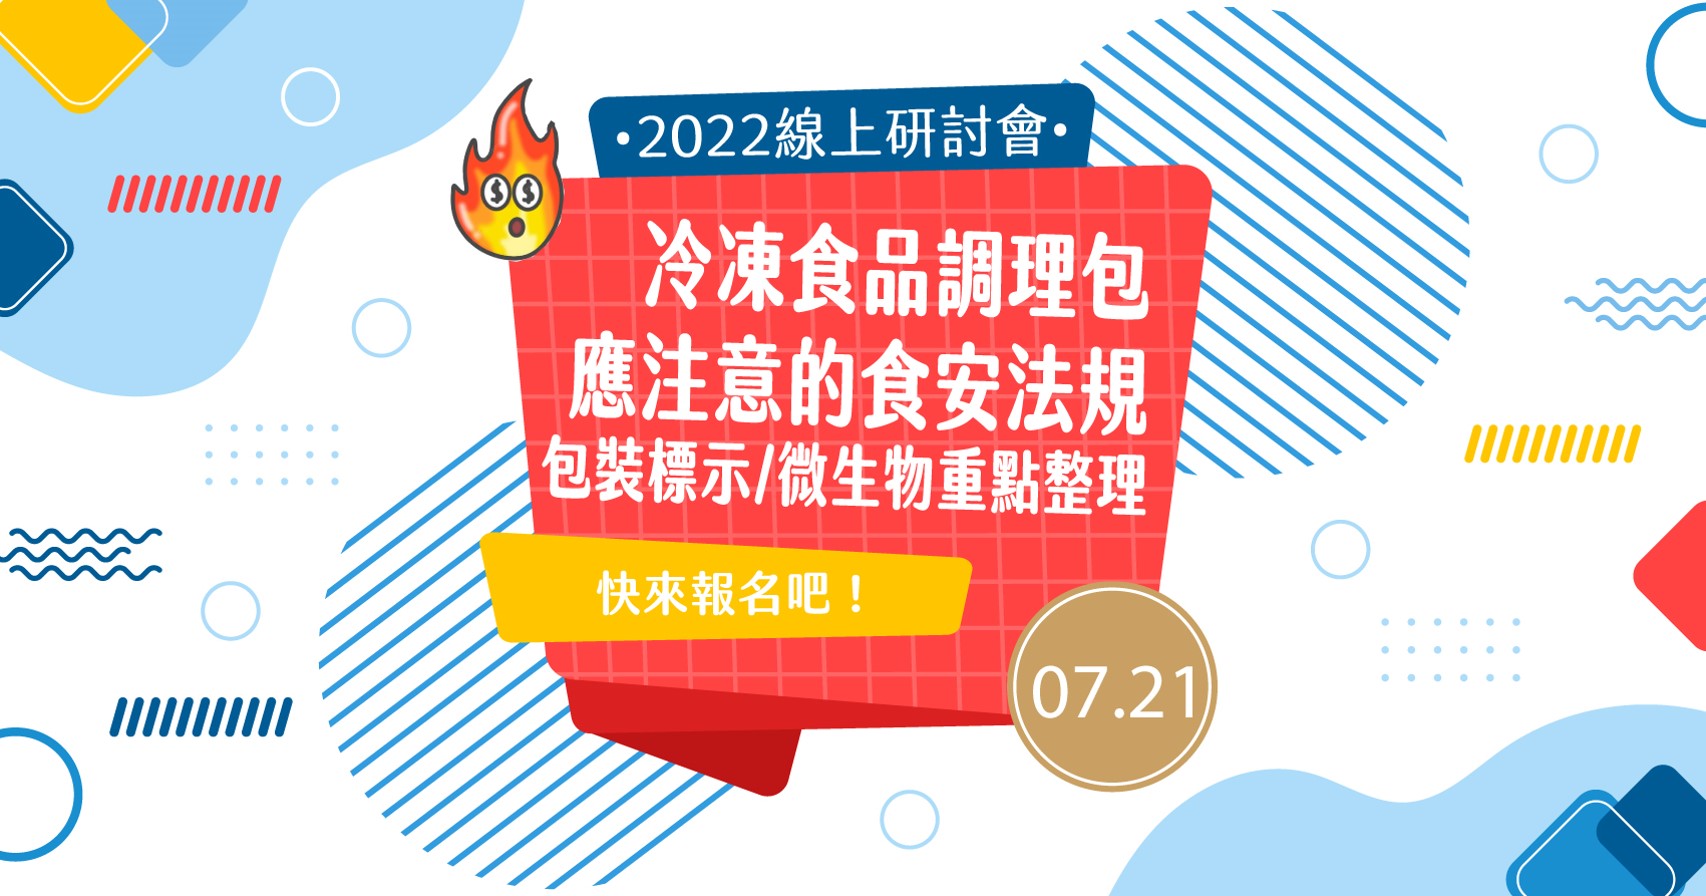 20220701-2022冷凍食品調理包-應注意的食安法規線上研討會